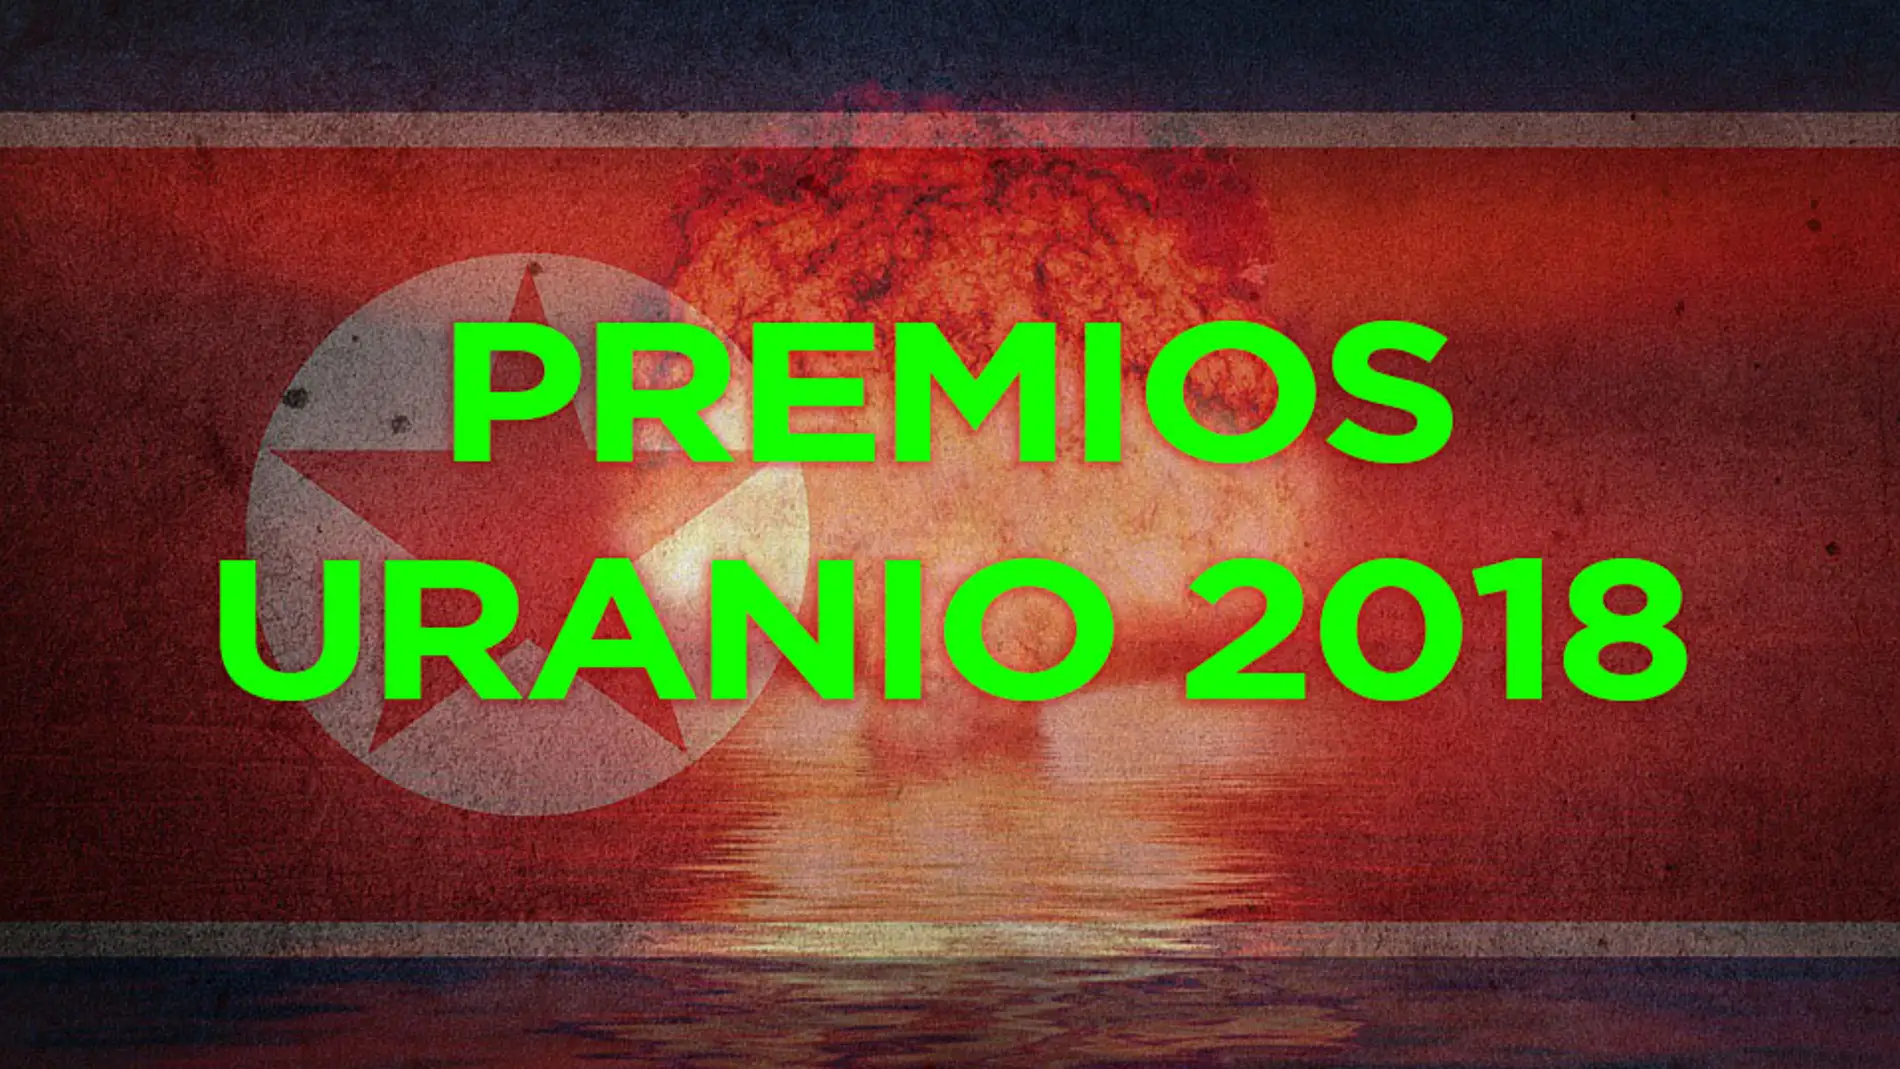 Premios Uranio 2018